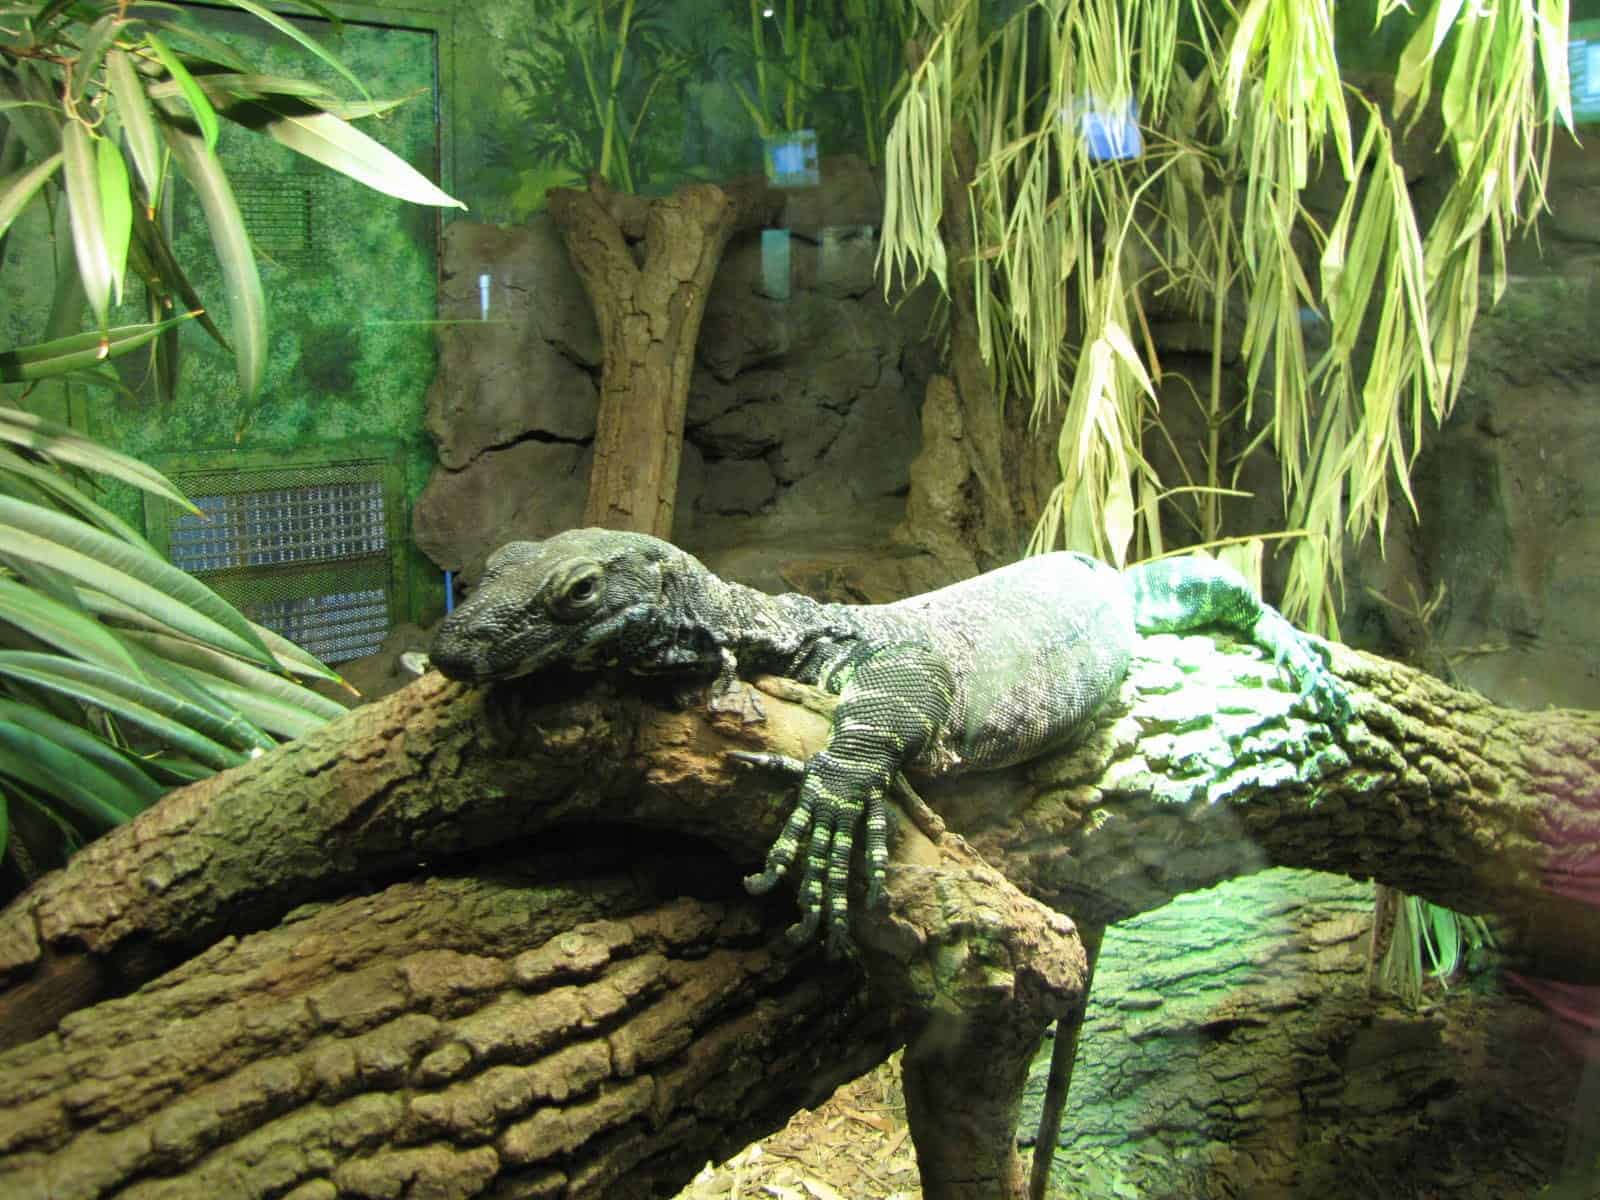 Reptile at Houston Zoo in Houston TX